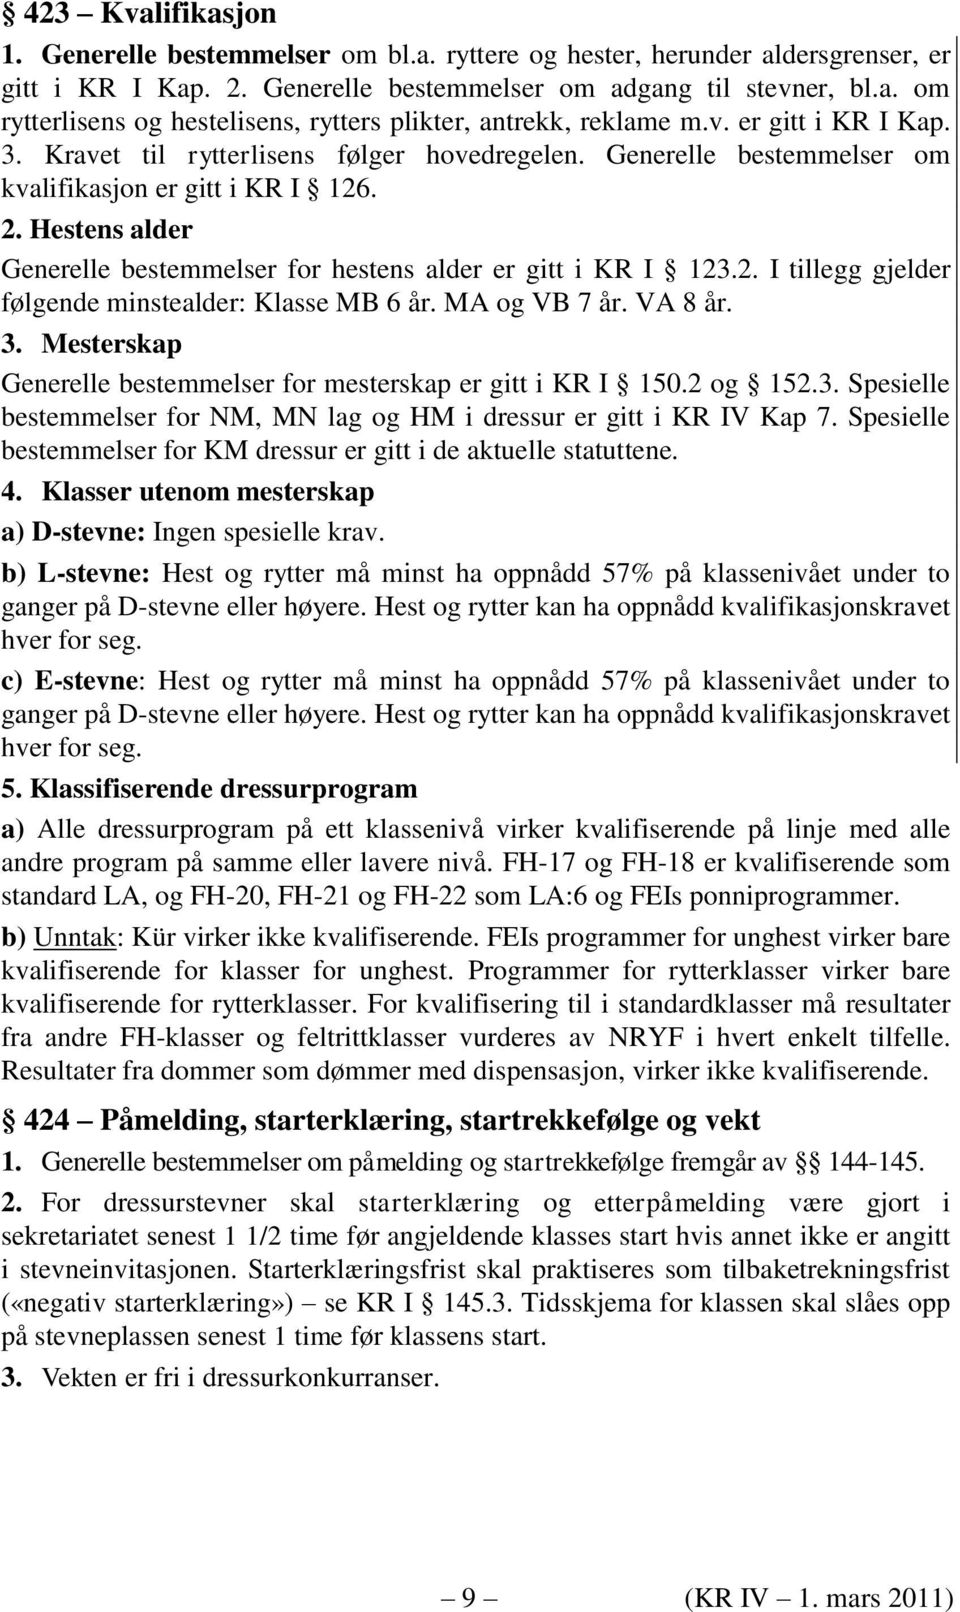 KONKURRANSEREGLEMENT FOR DRESSURRIDNING (KR IV) Norges Rytterforbund NRYF -  PDF Gratis nedlasting